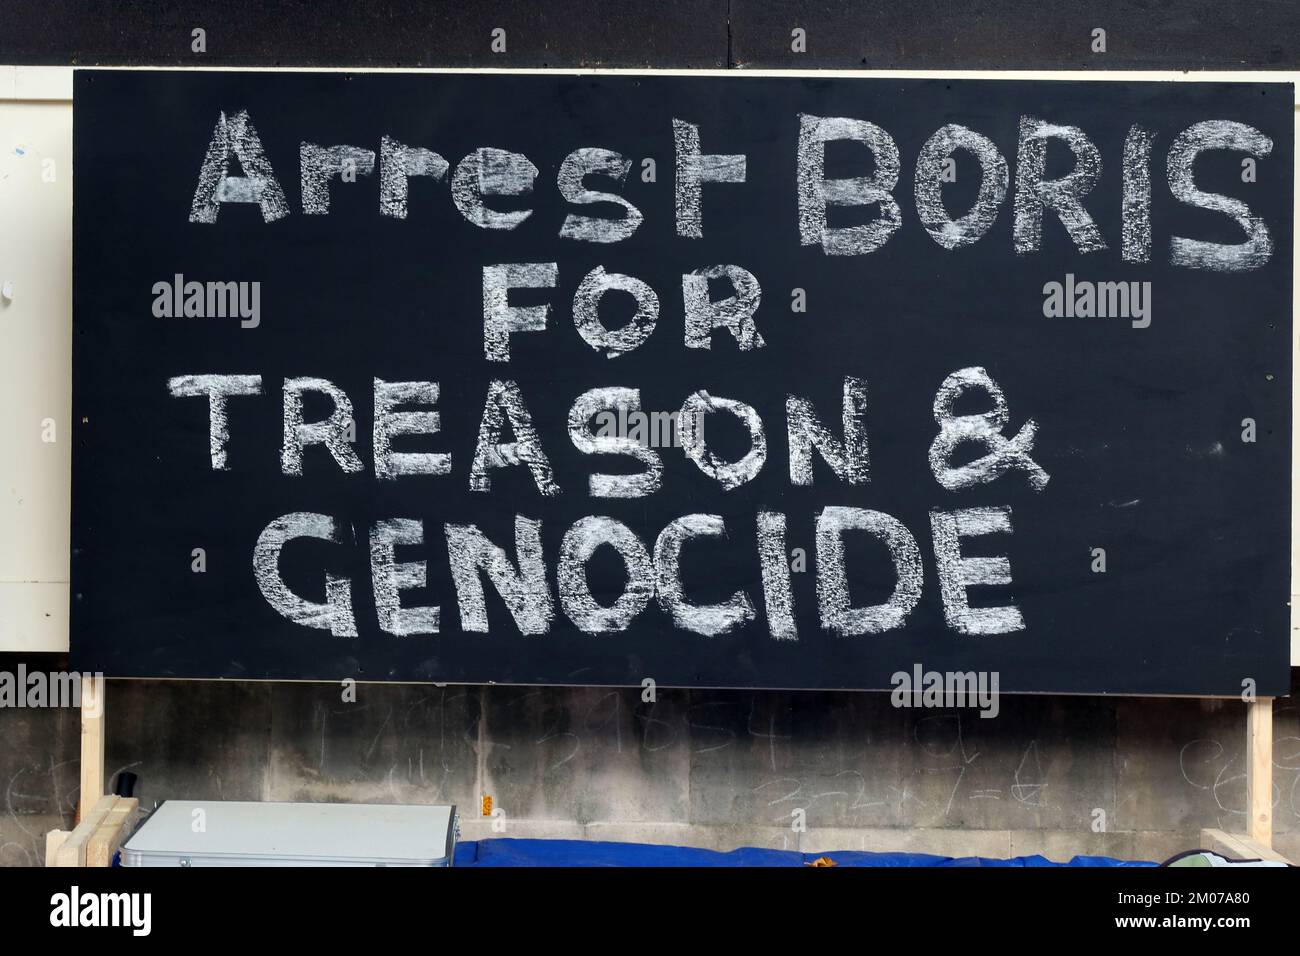 Arrestation de Boris pour trahison et génocide - manifestation Whitehall, Cité de Westminster, Londres, Angleterre, Royaume-Uni, SW1 Banque D'Images